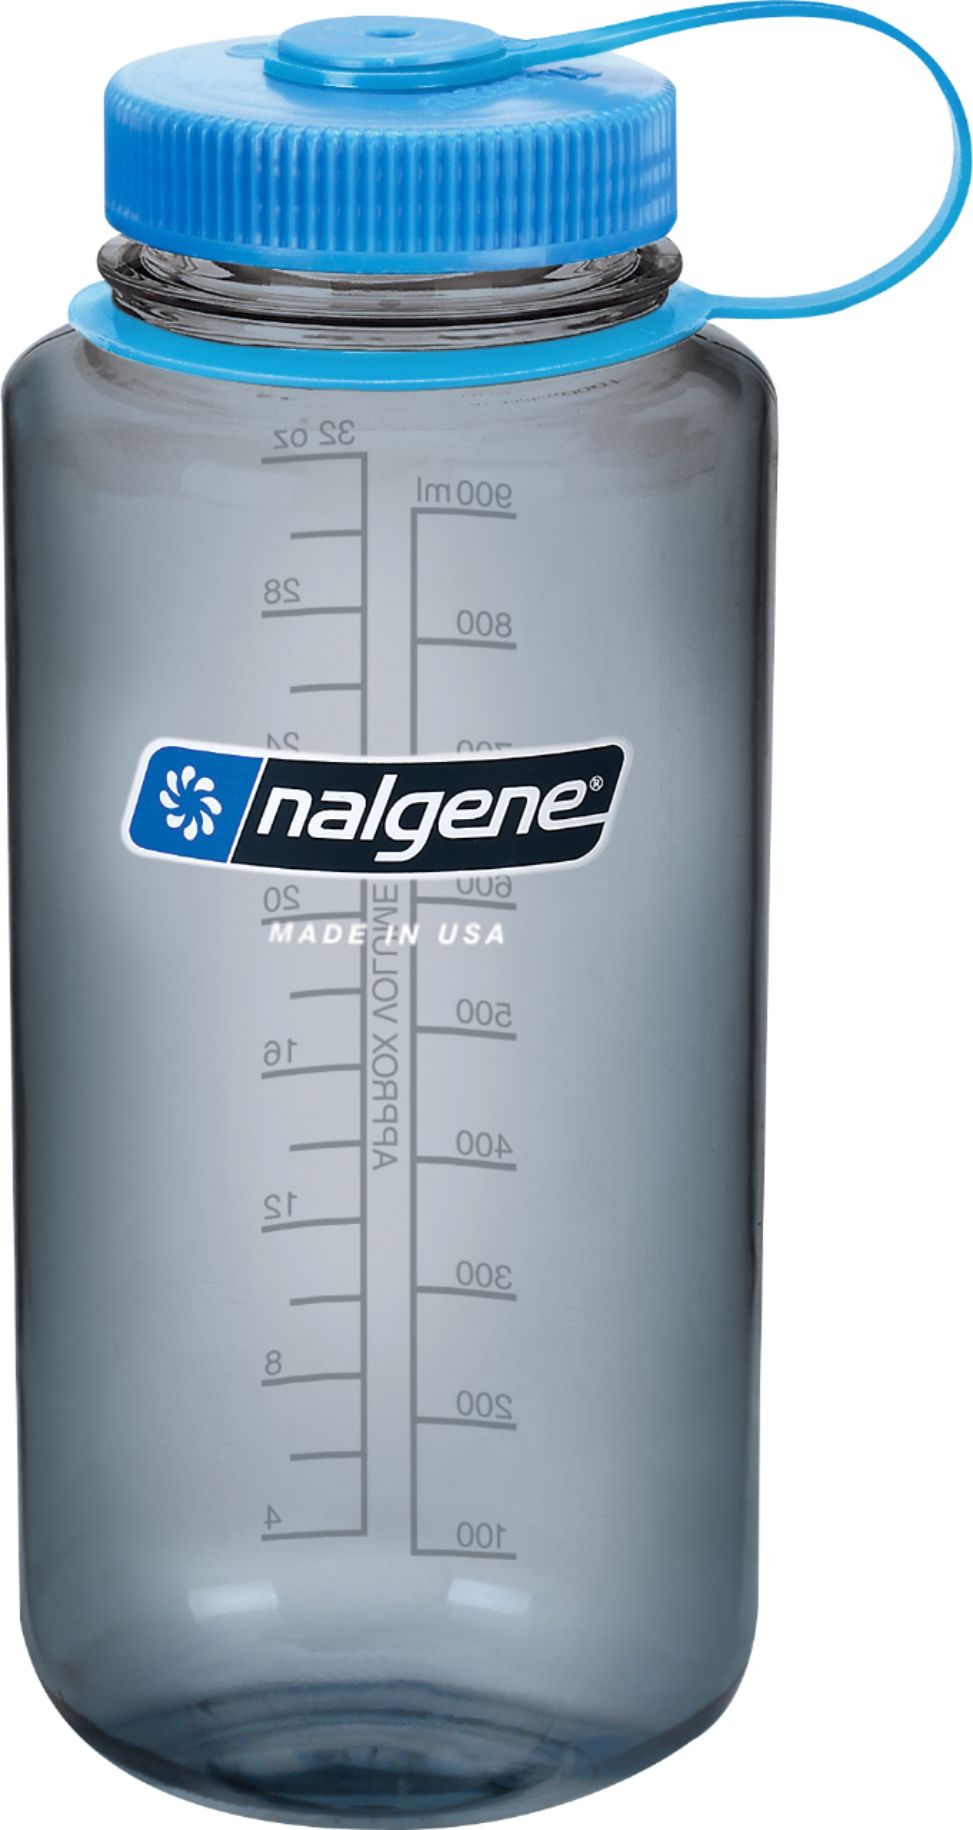 Nalgene 30 oz N-Gen BpA Free Plastic Water Bottle - Blue